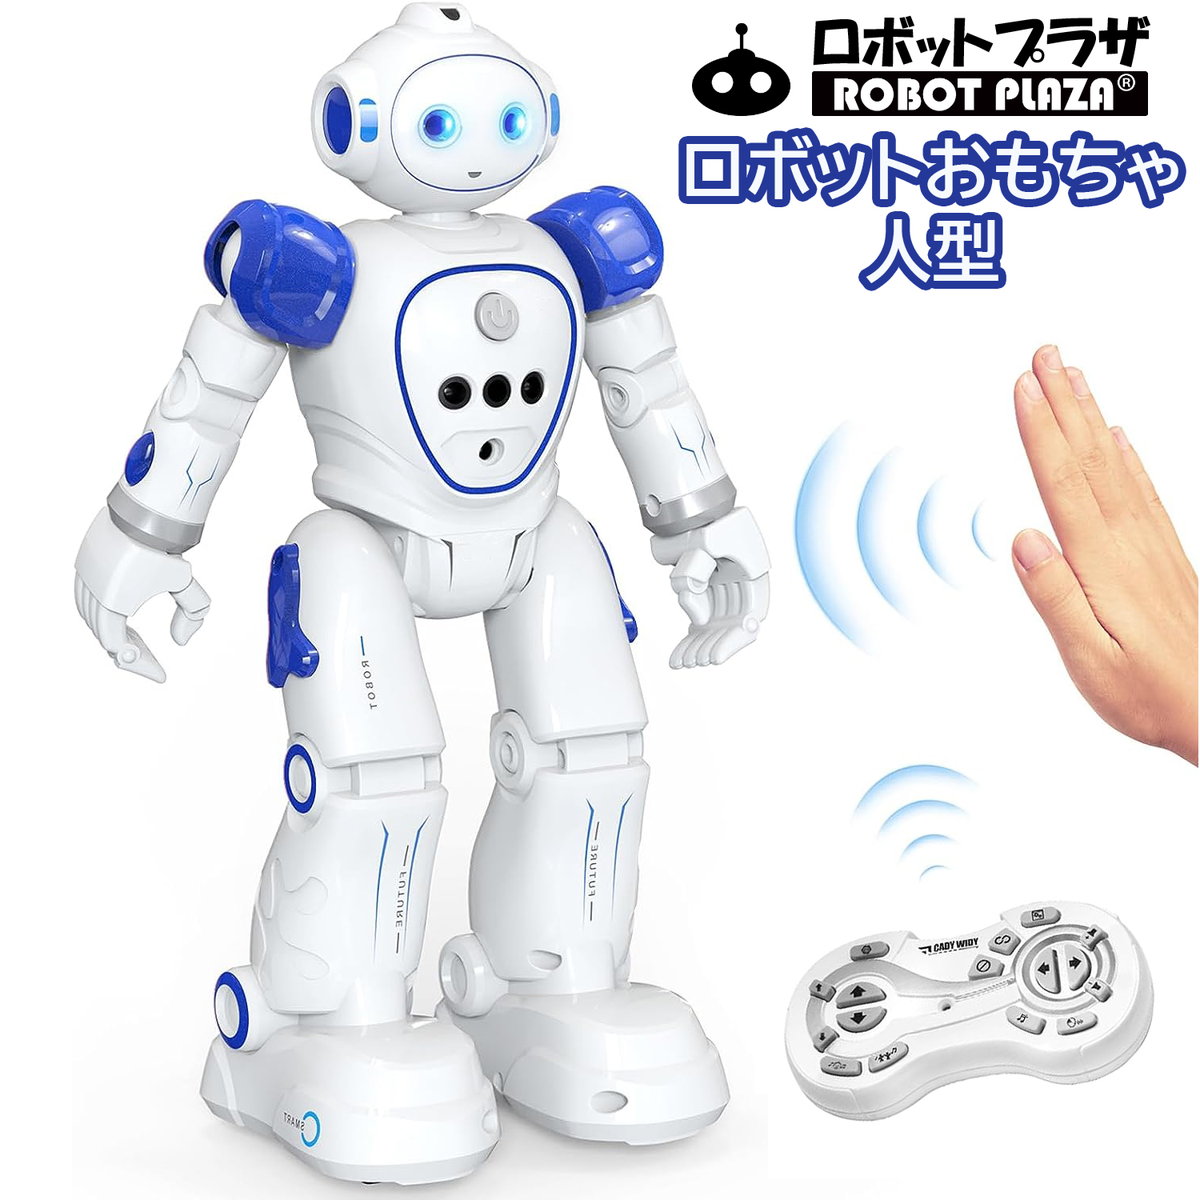 二足走行できるロボットおもちゃ、ダンス、ミュージック、簡易プログラミング、英語おっしゃべり、自動デモ、スライドなど多機能搭載、ジェスチャー(手振り制御)も可能